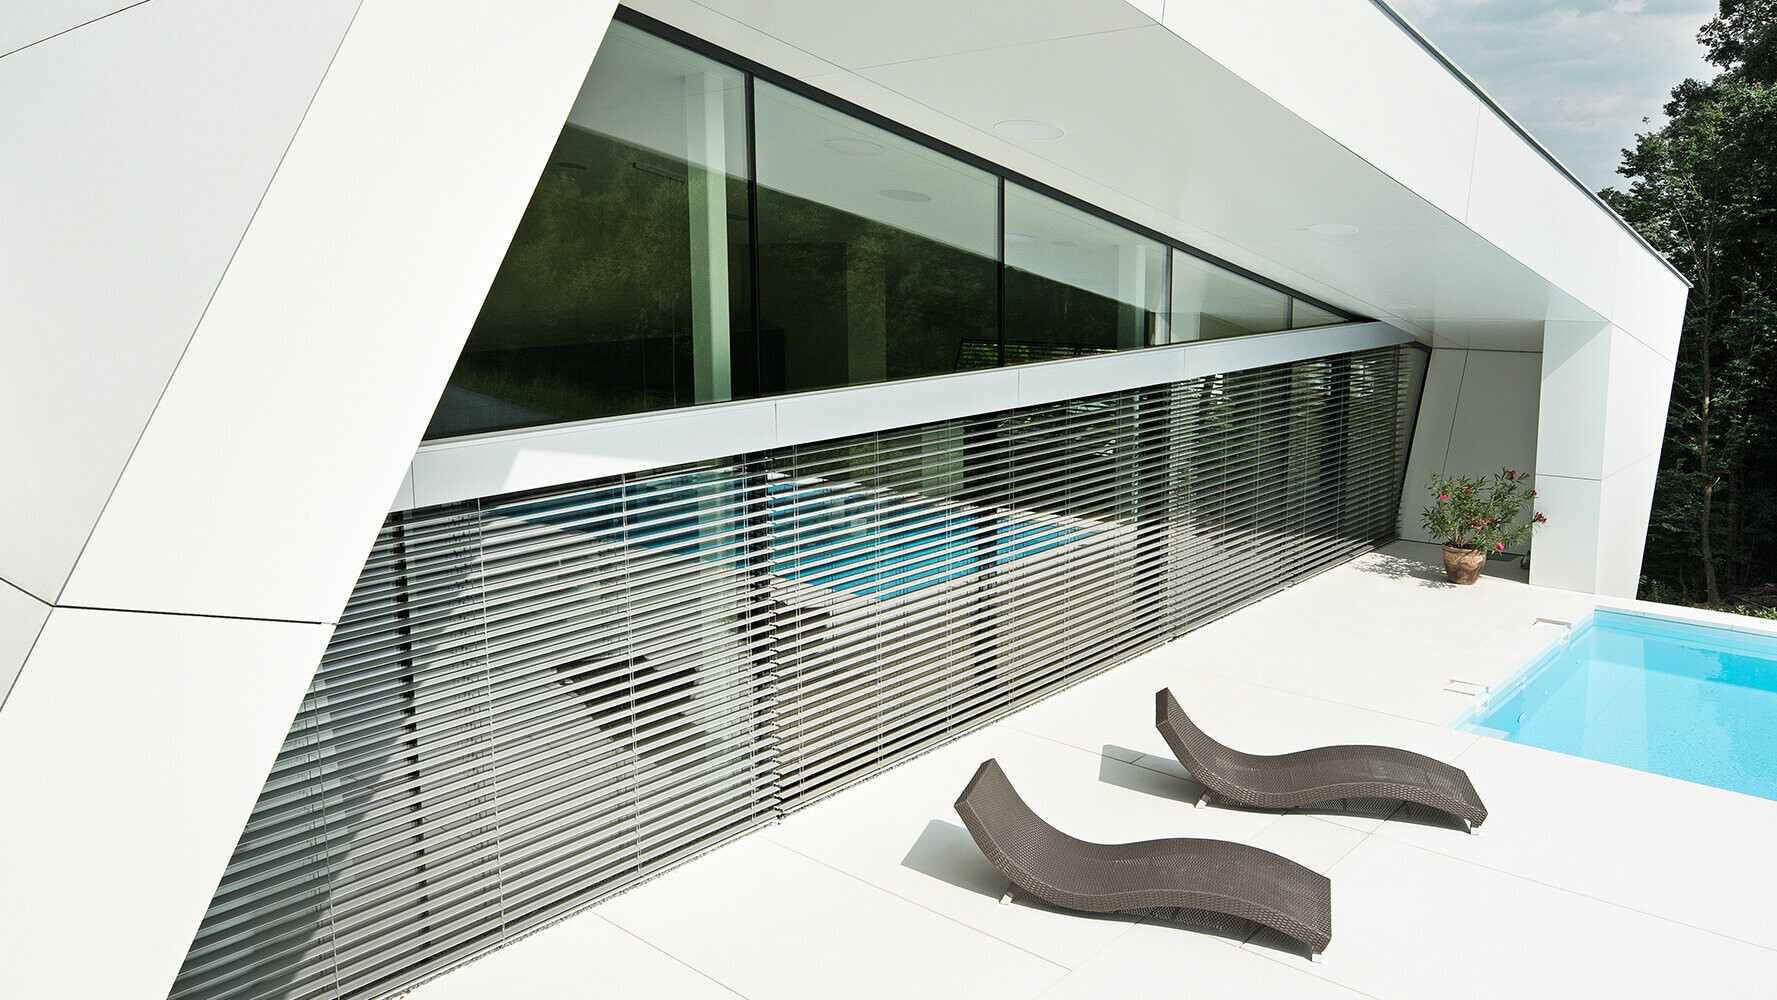 Maison individuelle moderne avec piscine. La façade du bâtiment est recouverte de panneaux composites de couleur blanc pur.